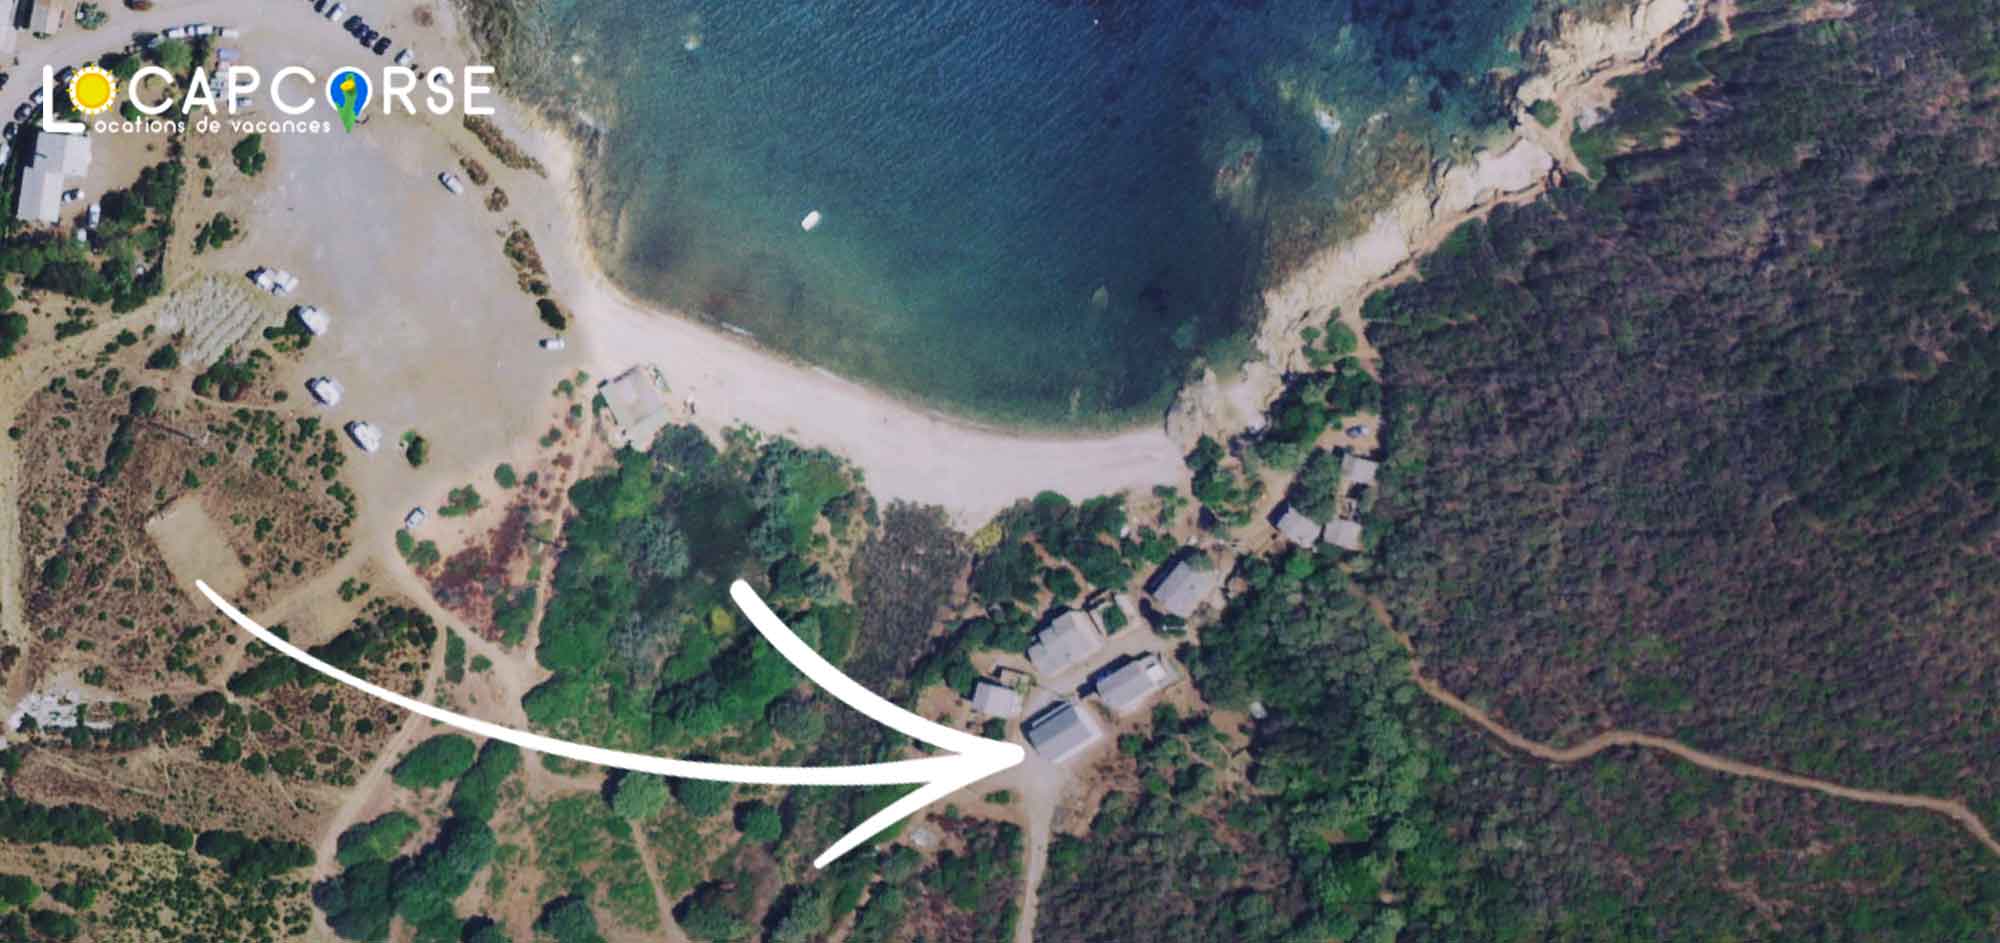 Vue satellite de la location de vacances à Tollare dans le Cap Corse